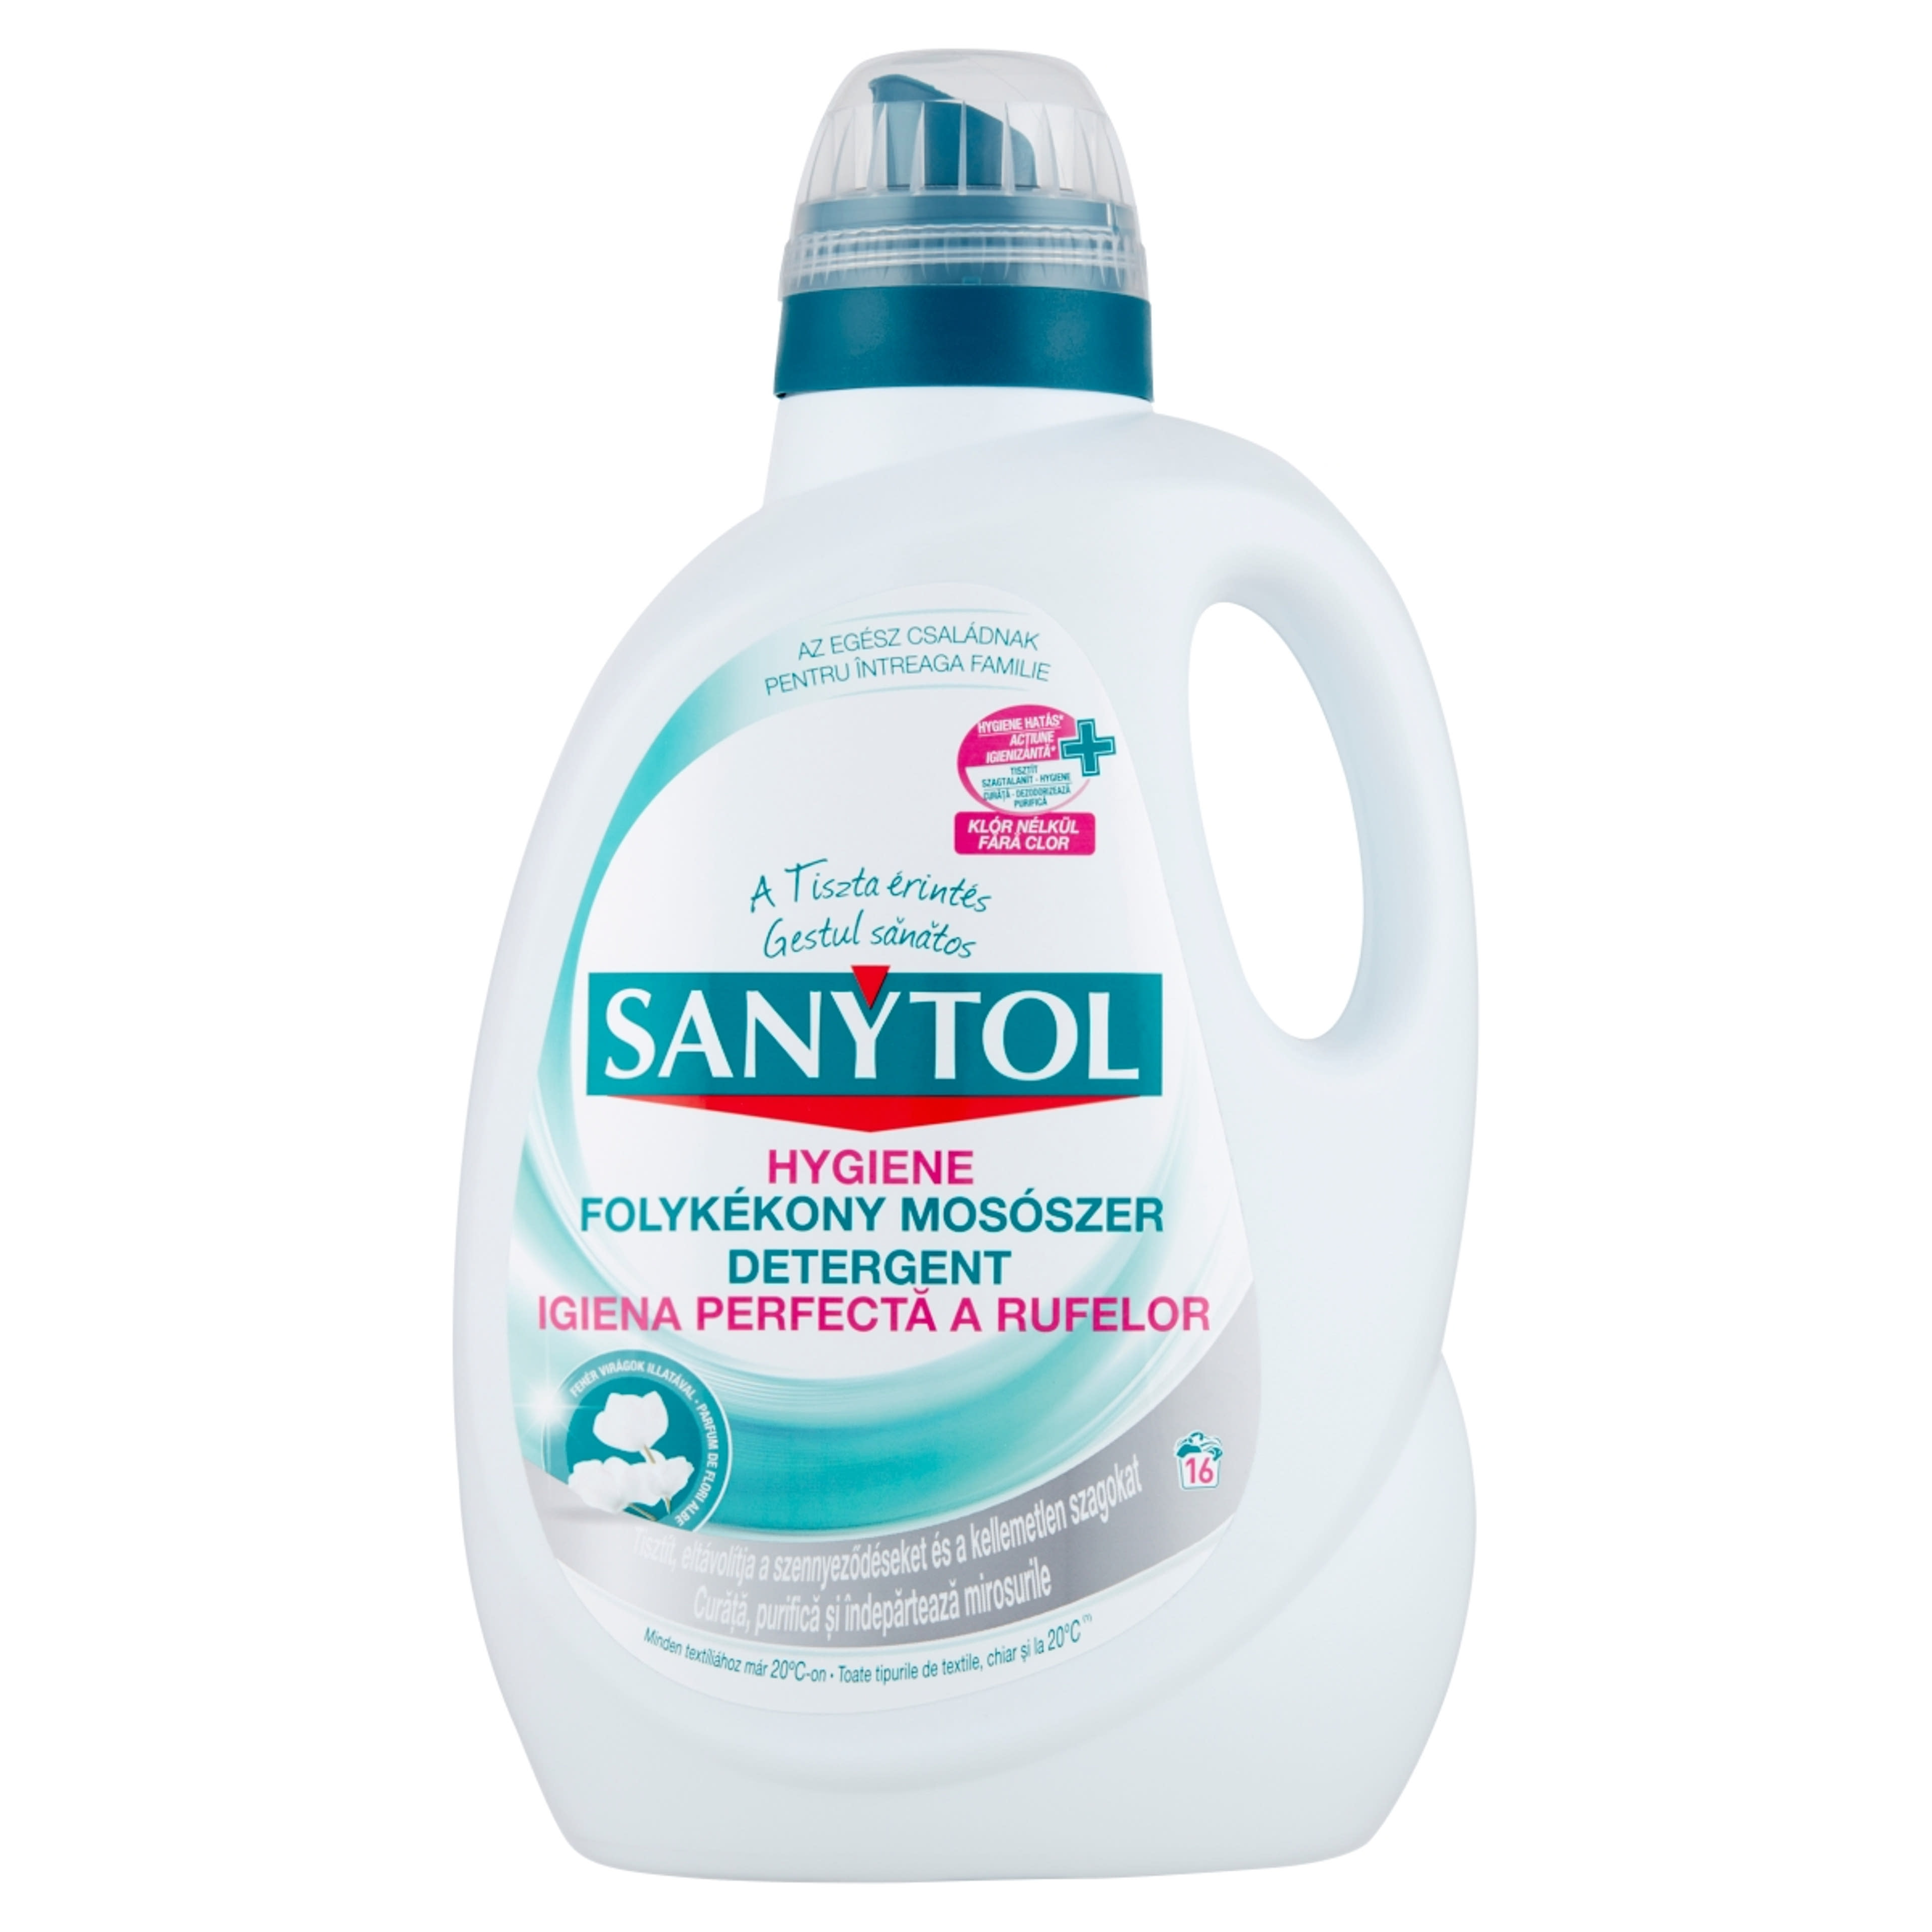 Sanytol hygiene folyékony mosószer - 1650 ml